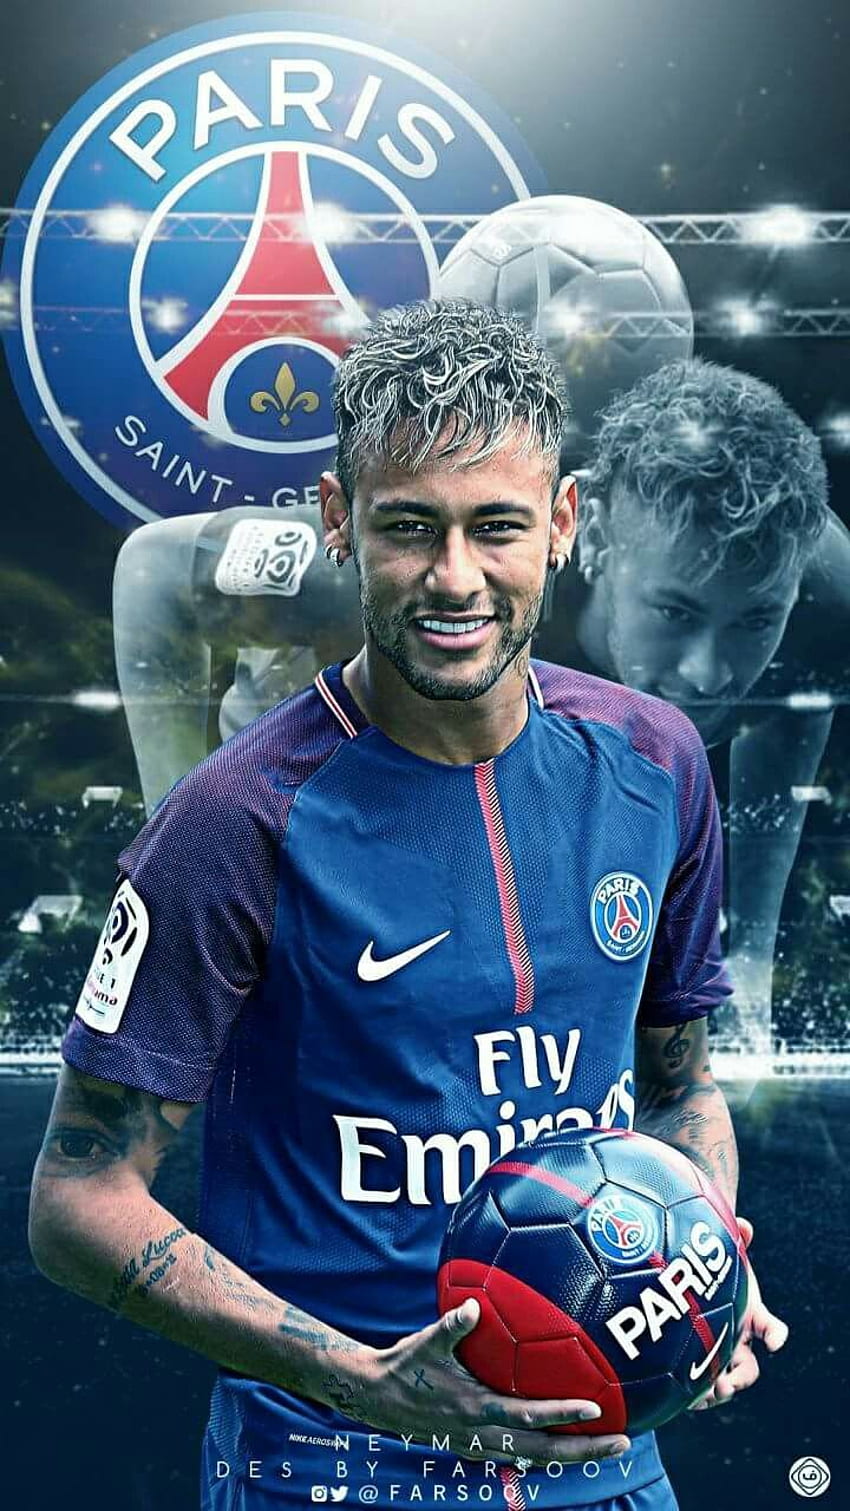 Hãy để màn hình điện thoại của bạn thăng hoa với Neymar Júnior HD phone wallpaper độc đáo từ PSG! Với phong cách chơi bóng đá đầy nghệ thuật và năng lượng tràn đầy, Neymar Jr luôn thu hút được sự quan tâm của các fan hâm mộ trên khắp thế giới. Vậy còn bạn, bạn có muốn truyền tải sự sống động của hình ảnh anh ta đến cho bạn bè và người thân không?